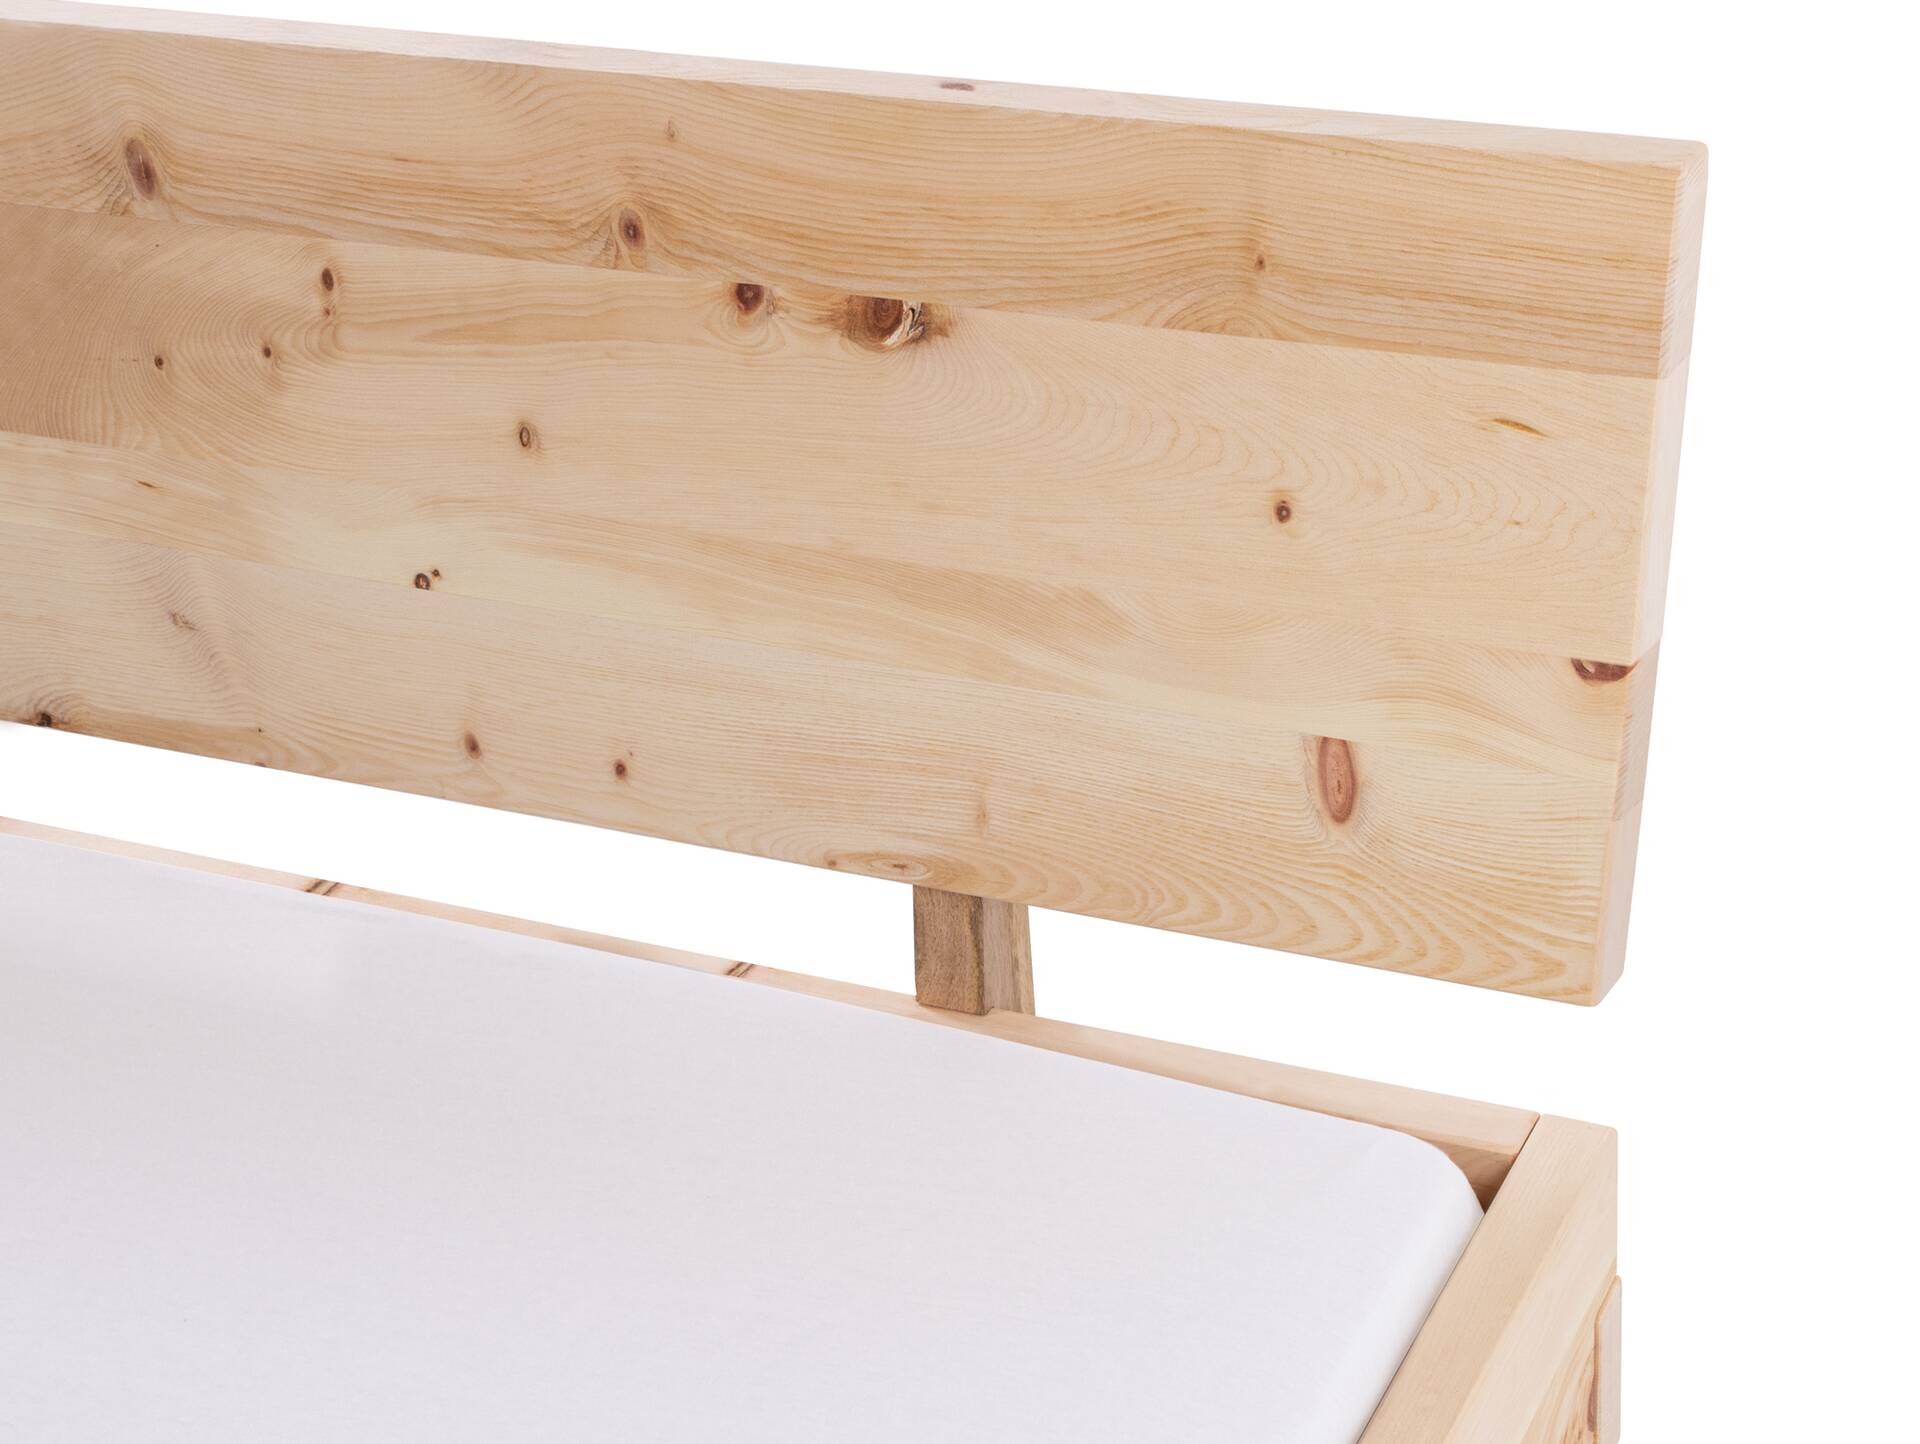 ZARUBA Zirbenbett mit Holz-Kufen/Holzkopfteil, Material Massivholz, Zirbe unbehandelt, mit/ohne Kopfteil 180 x 220 cm | mit Kopfteil